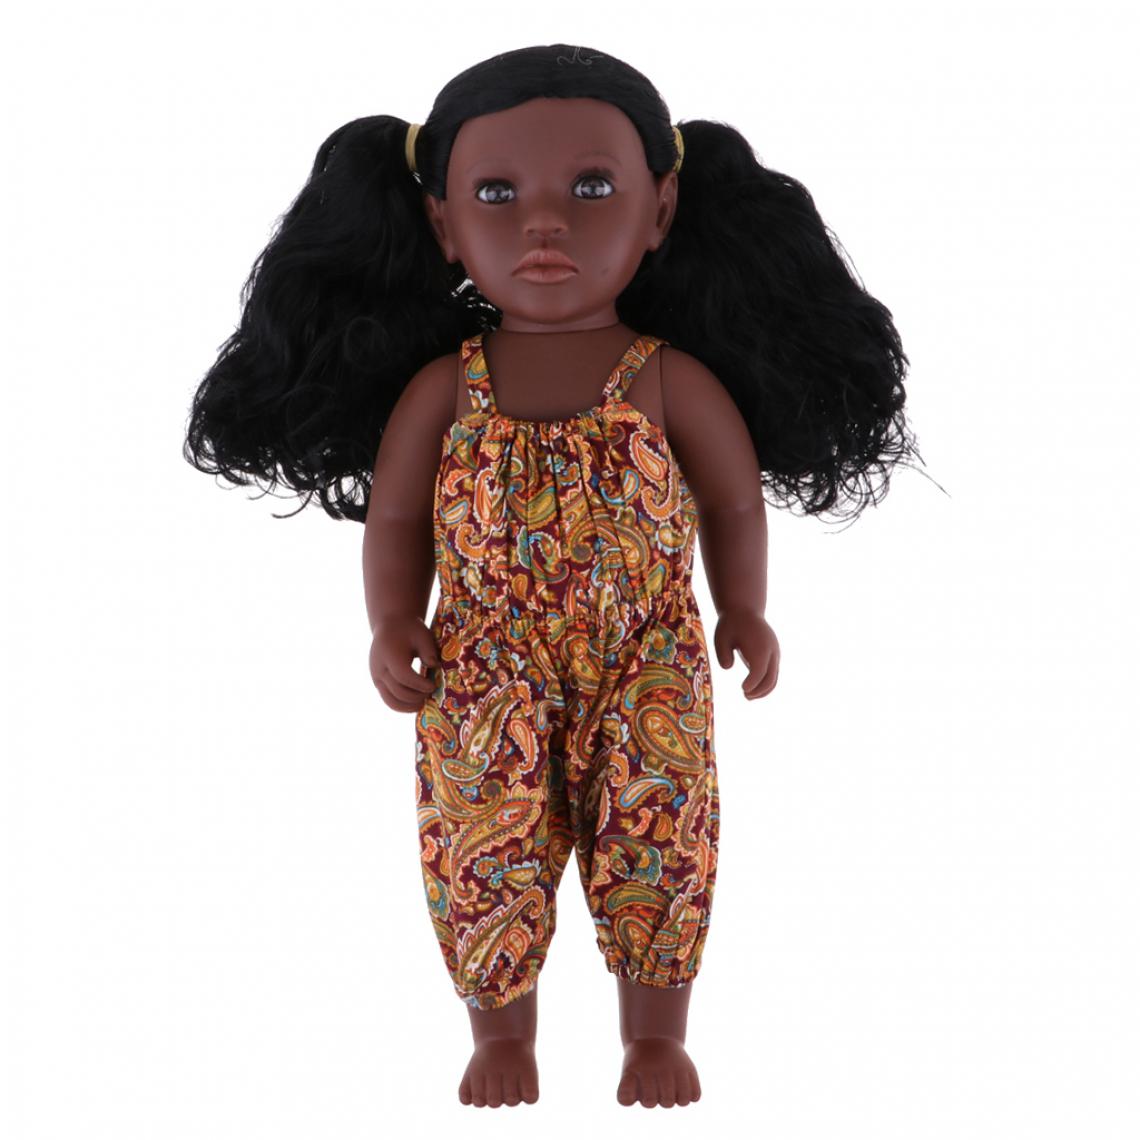 marque generique - Excellent Exécution Réaliste Vinyle Poupée Réaliste Little Girl Doll Enfants Dormir Jouet 43 Cm - Maisons de poupées